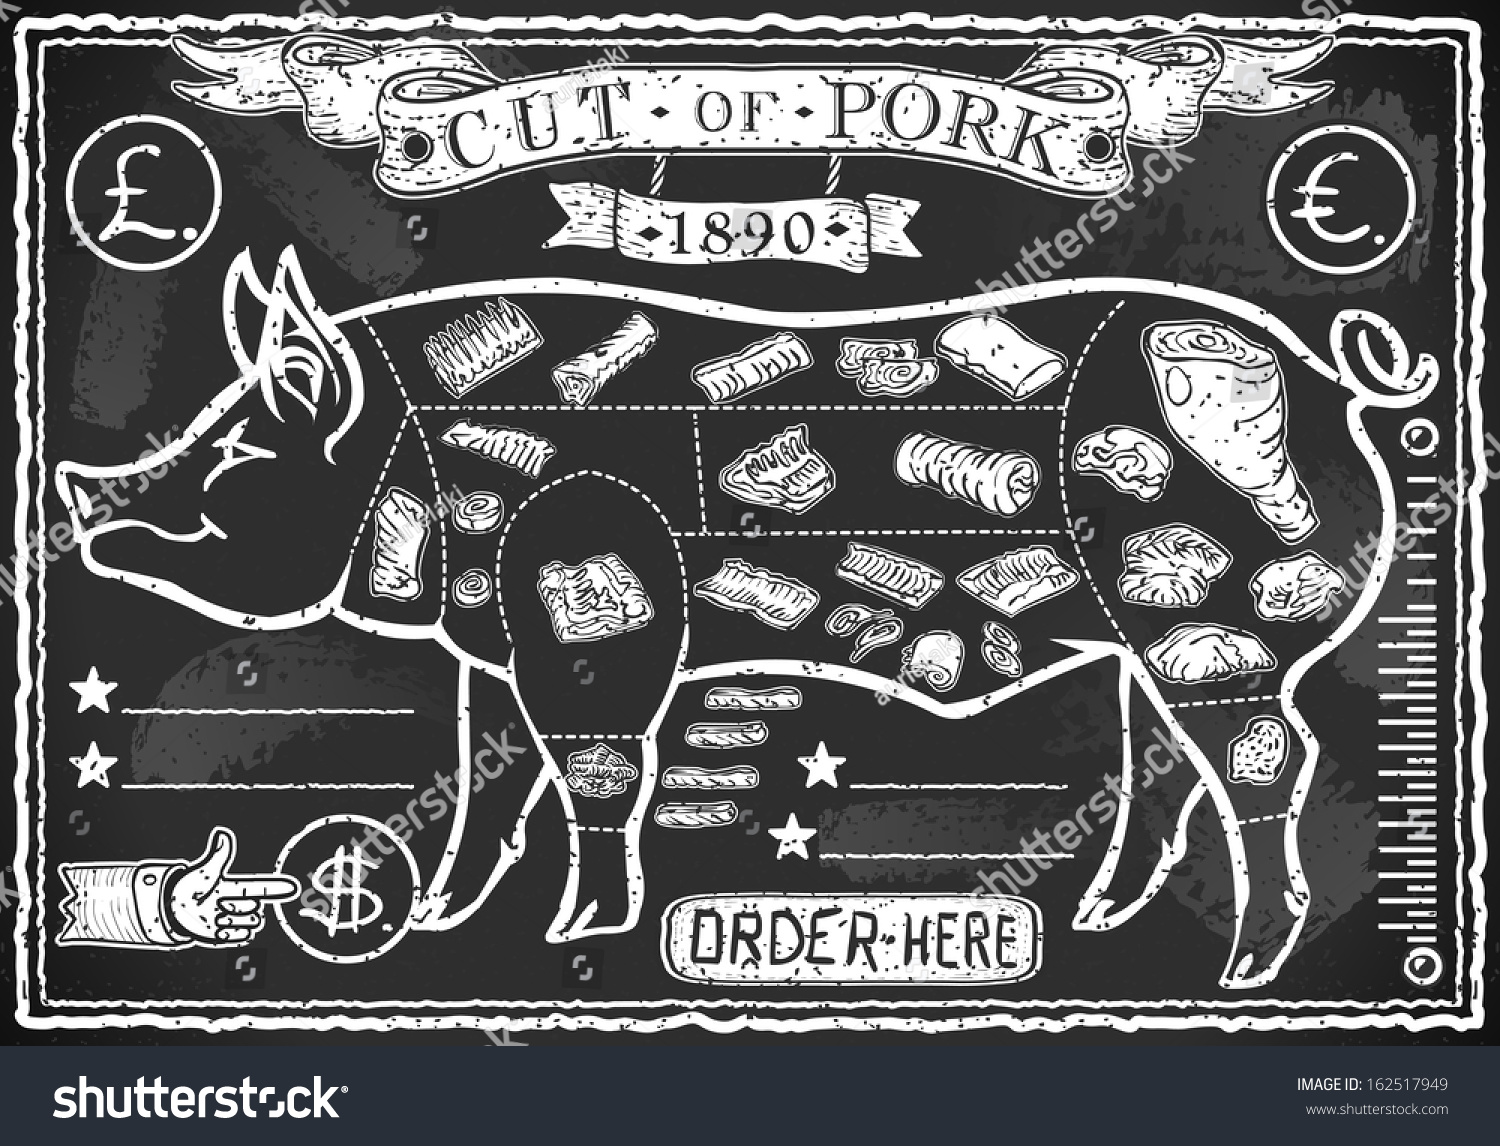 Antique Butcher Chart